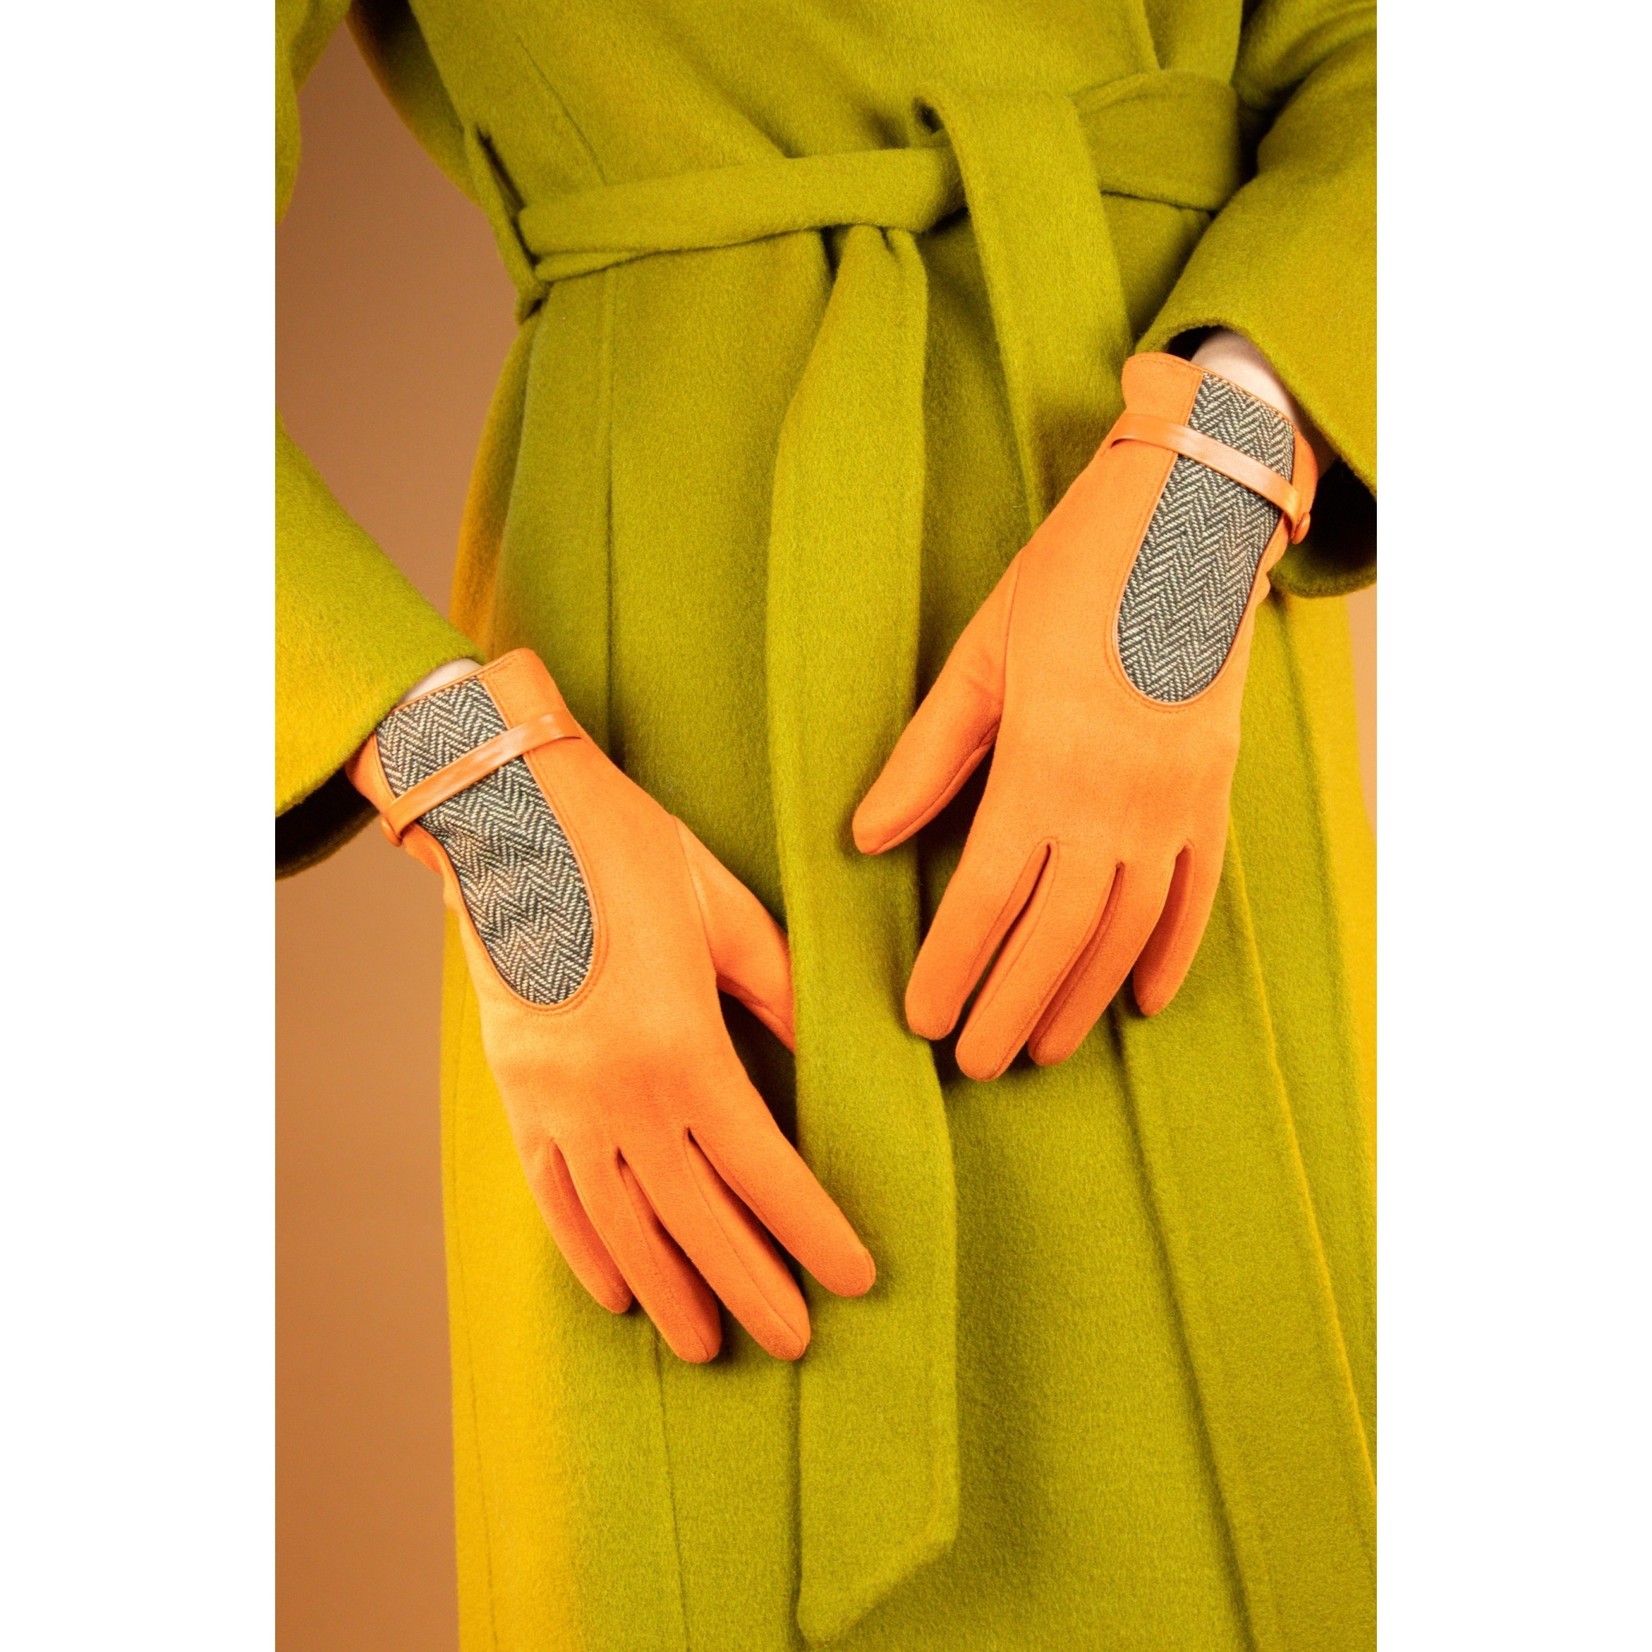 Powder Design Genevieve Gloves - Tangerine by Powder Design